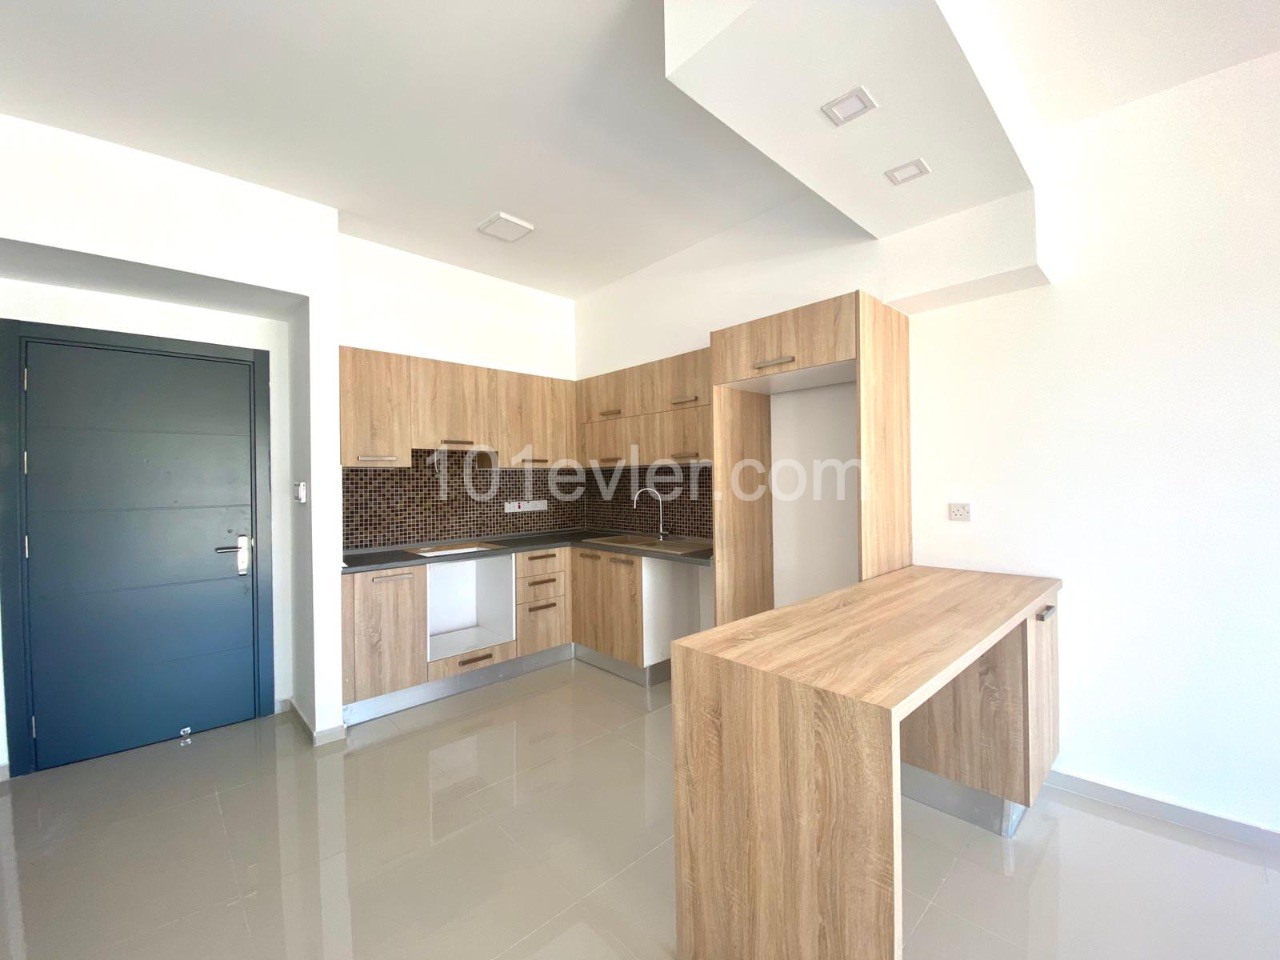 1+1 Wohnung zum Verkauf in Nikosia Hamitköy, Zypern 63 m2, Garten und 7/24 gesichertes Grundstück 47.000 Llogara ** 